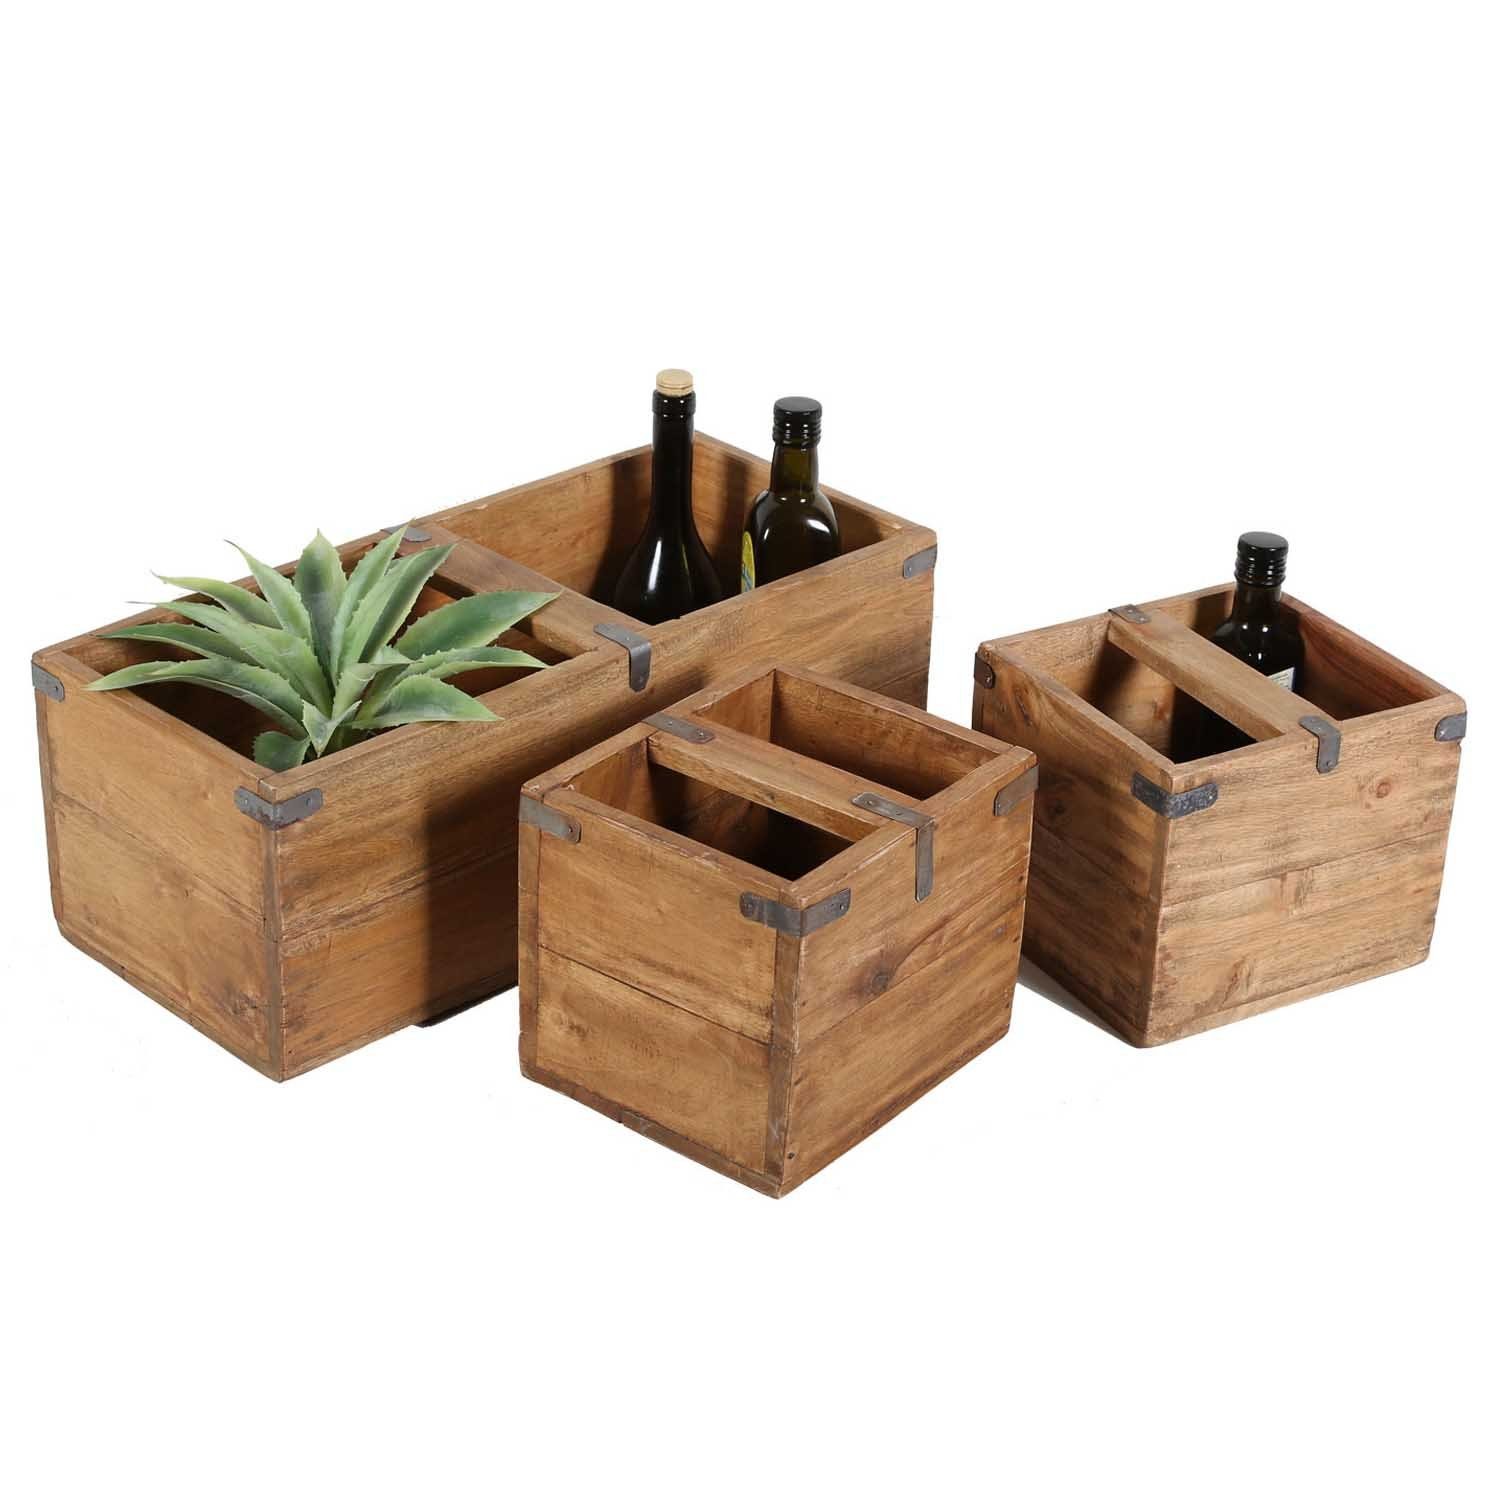 Casa Moro Balkonkasten Teak Holzbox Enzo 3er Set Deko Möbelkiste Holz Kiste Box, aus recyceltem Teak Holz gefertigt